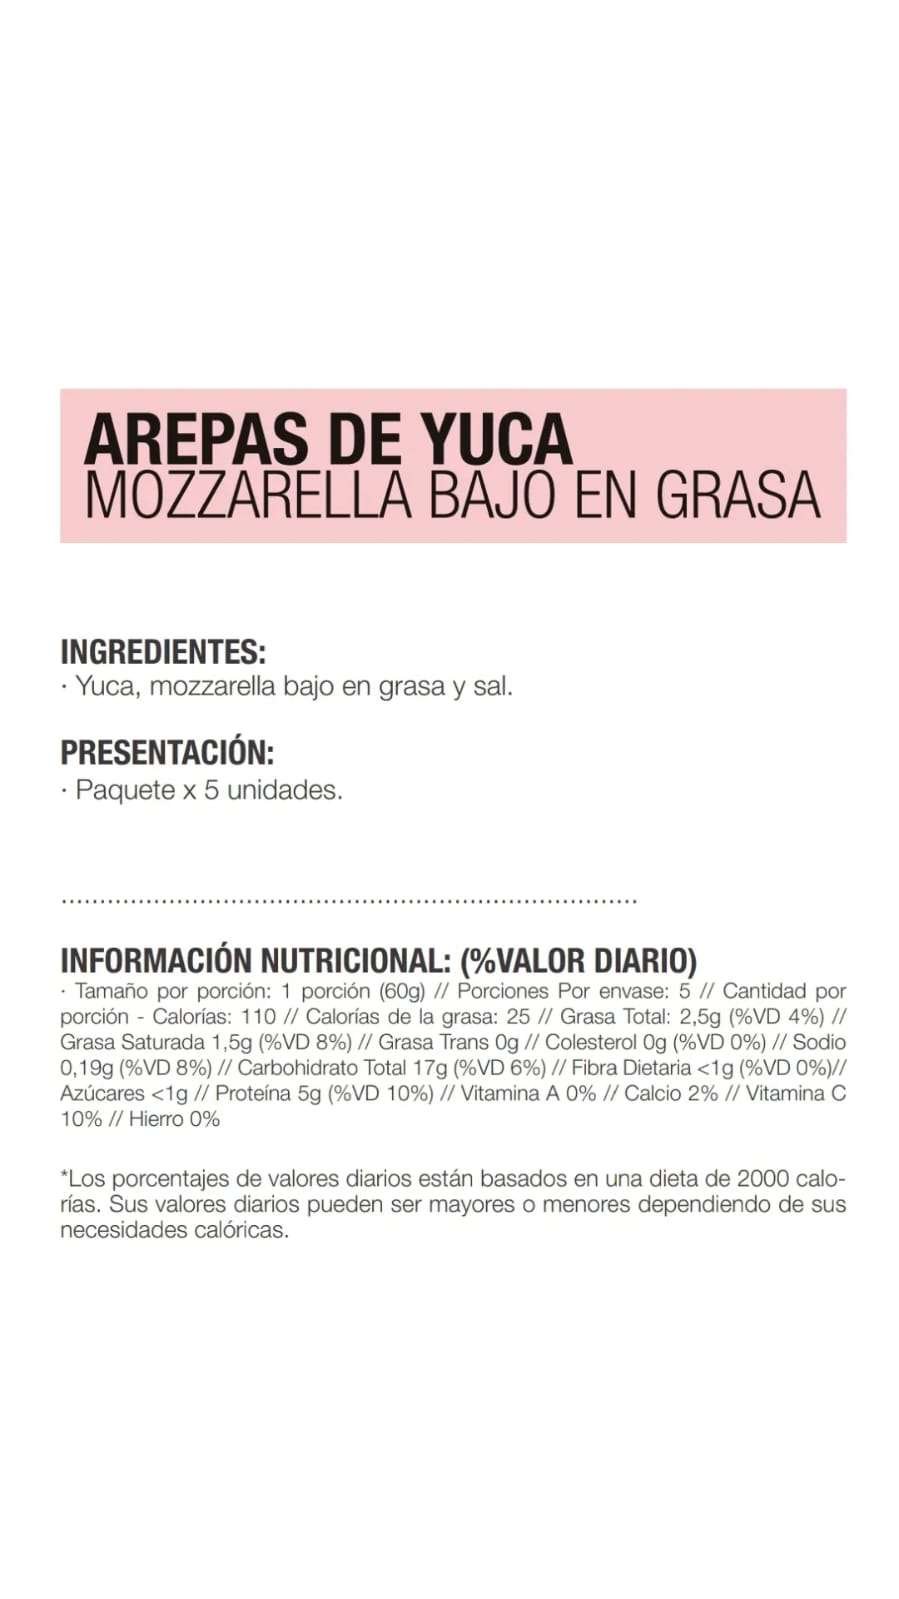 Tabla nutricional Arepas de yuca con queso mozzarella bajo en grasa 5 und